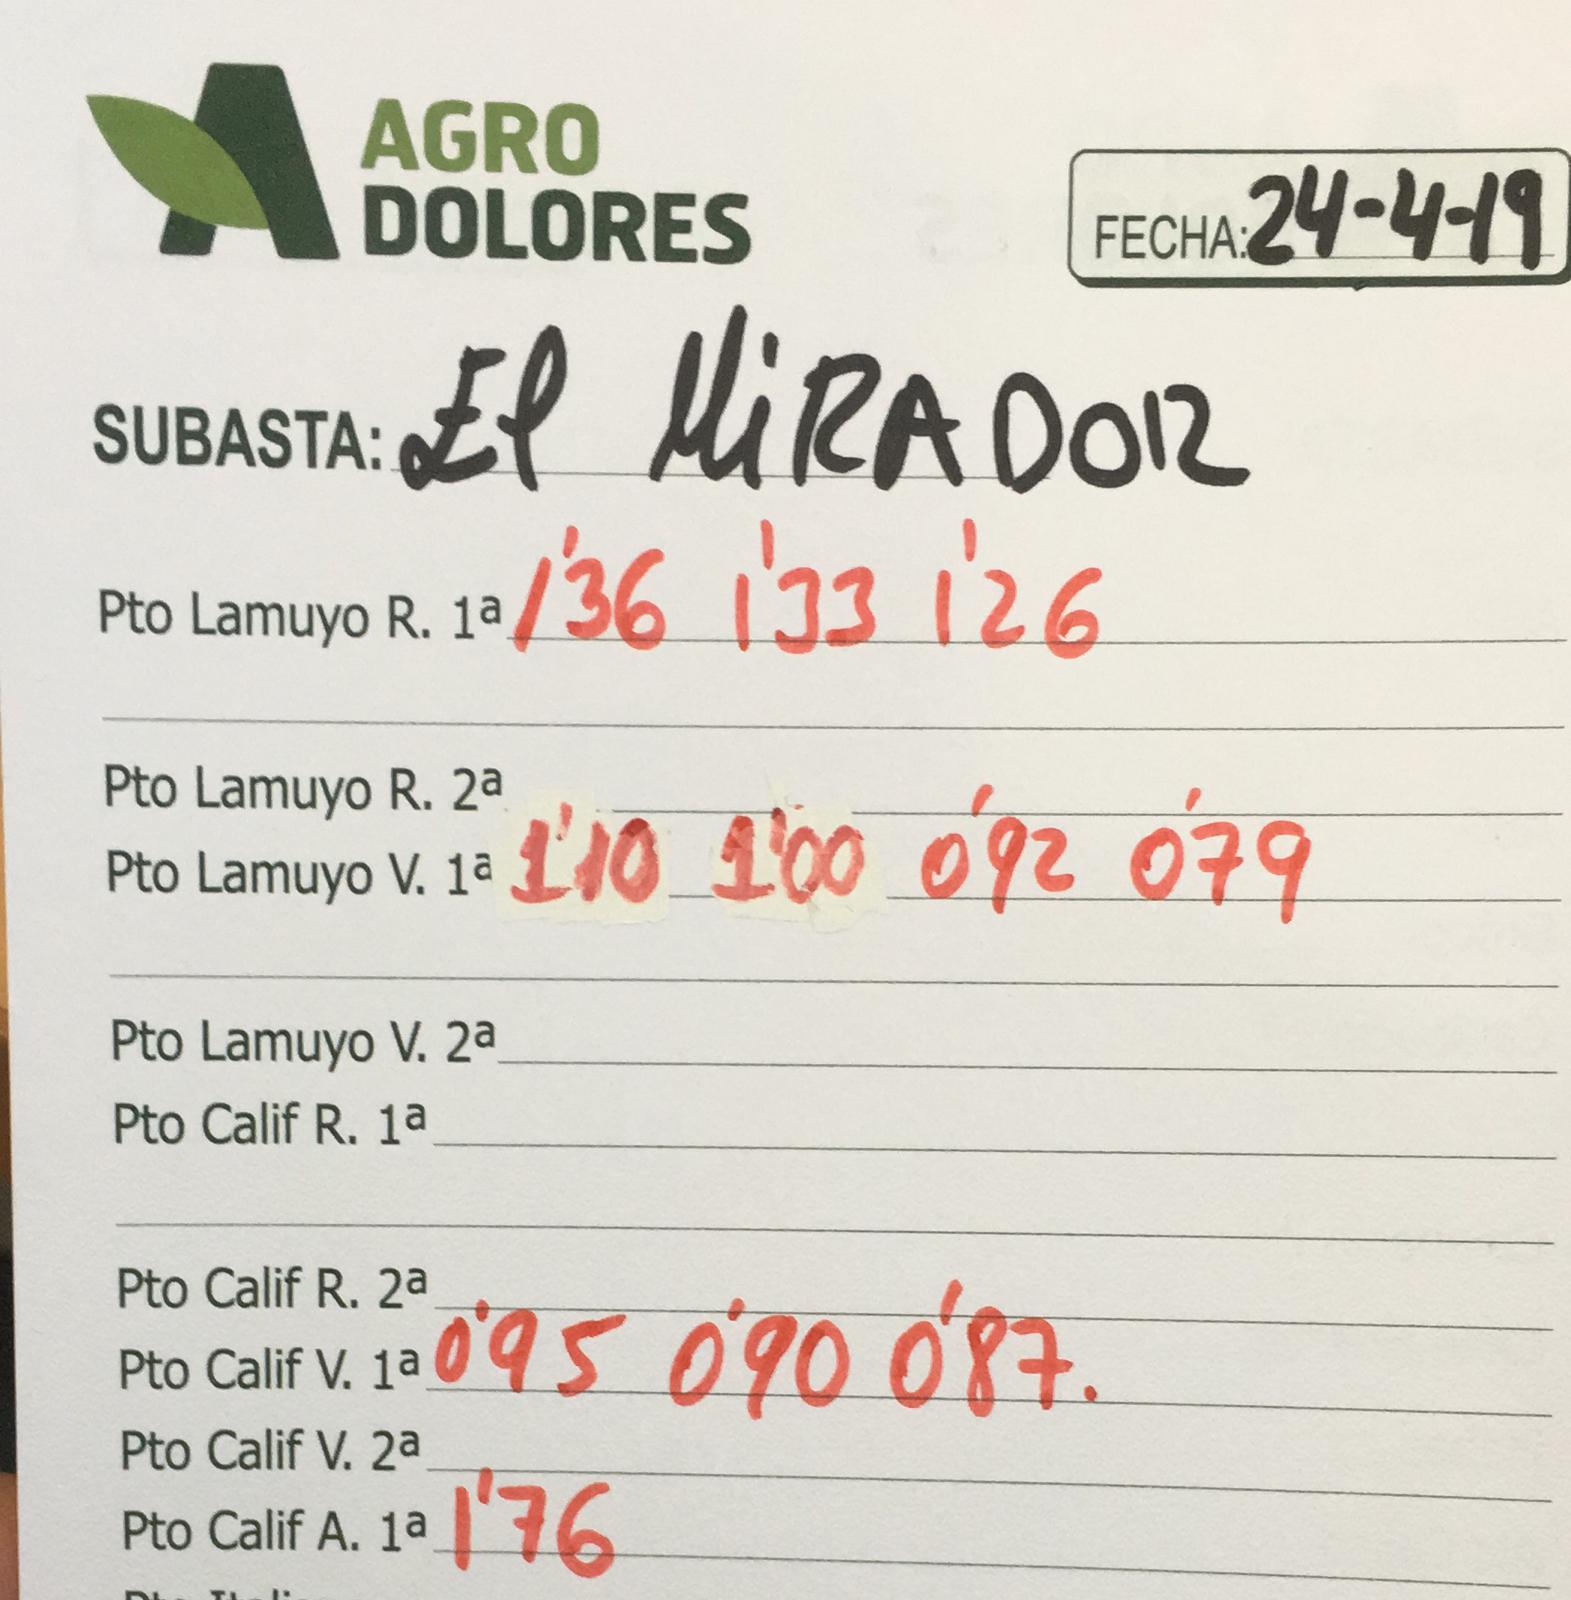 Subasta hortofrutícola Agrodolores El Mirador 24 de Abril 2019